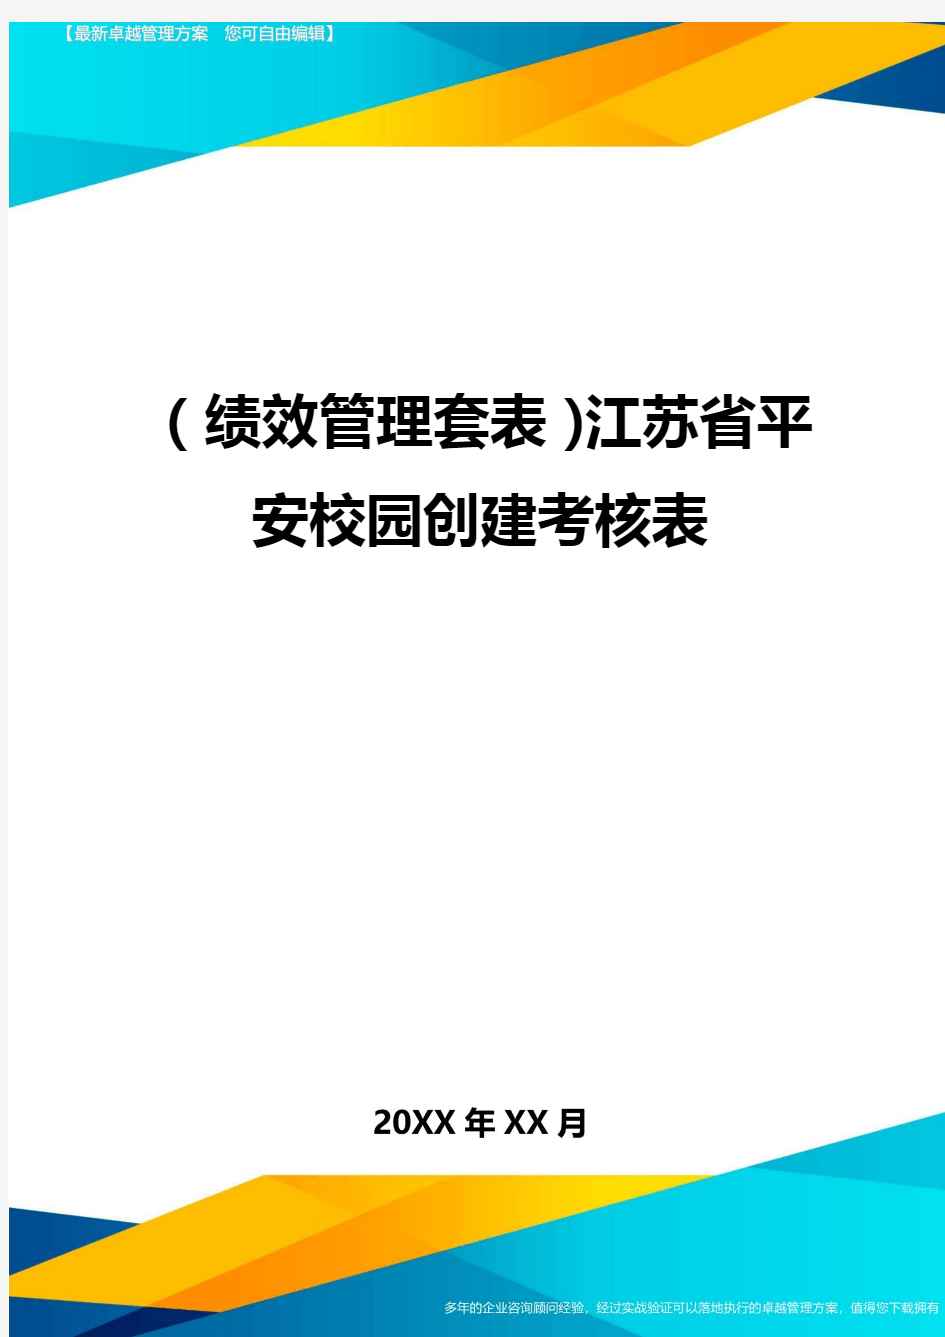 (绩效管理套表)江苏省平安校园创建考核表最新版